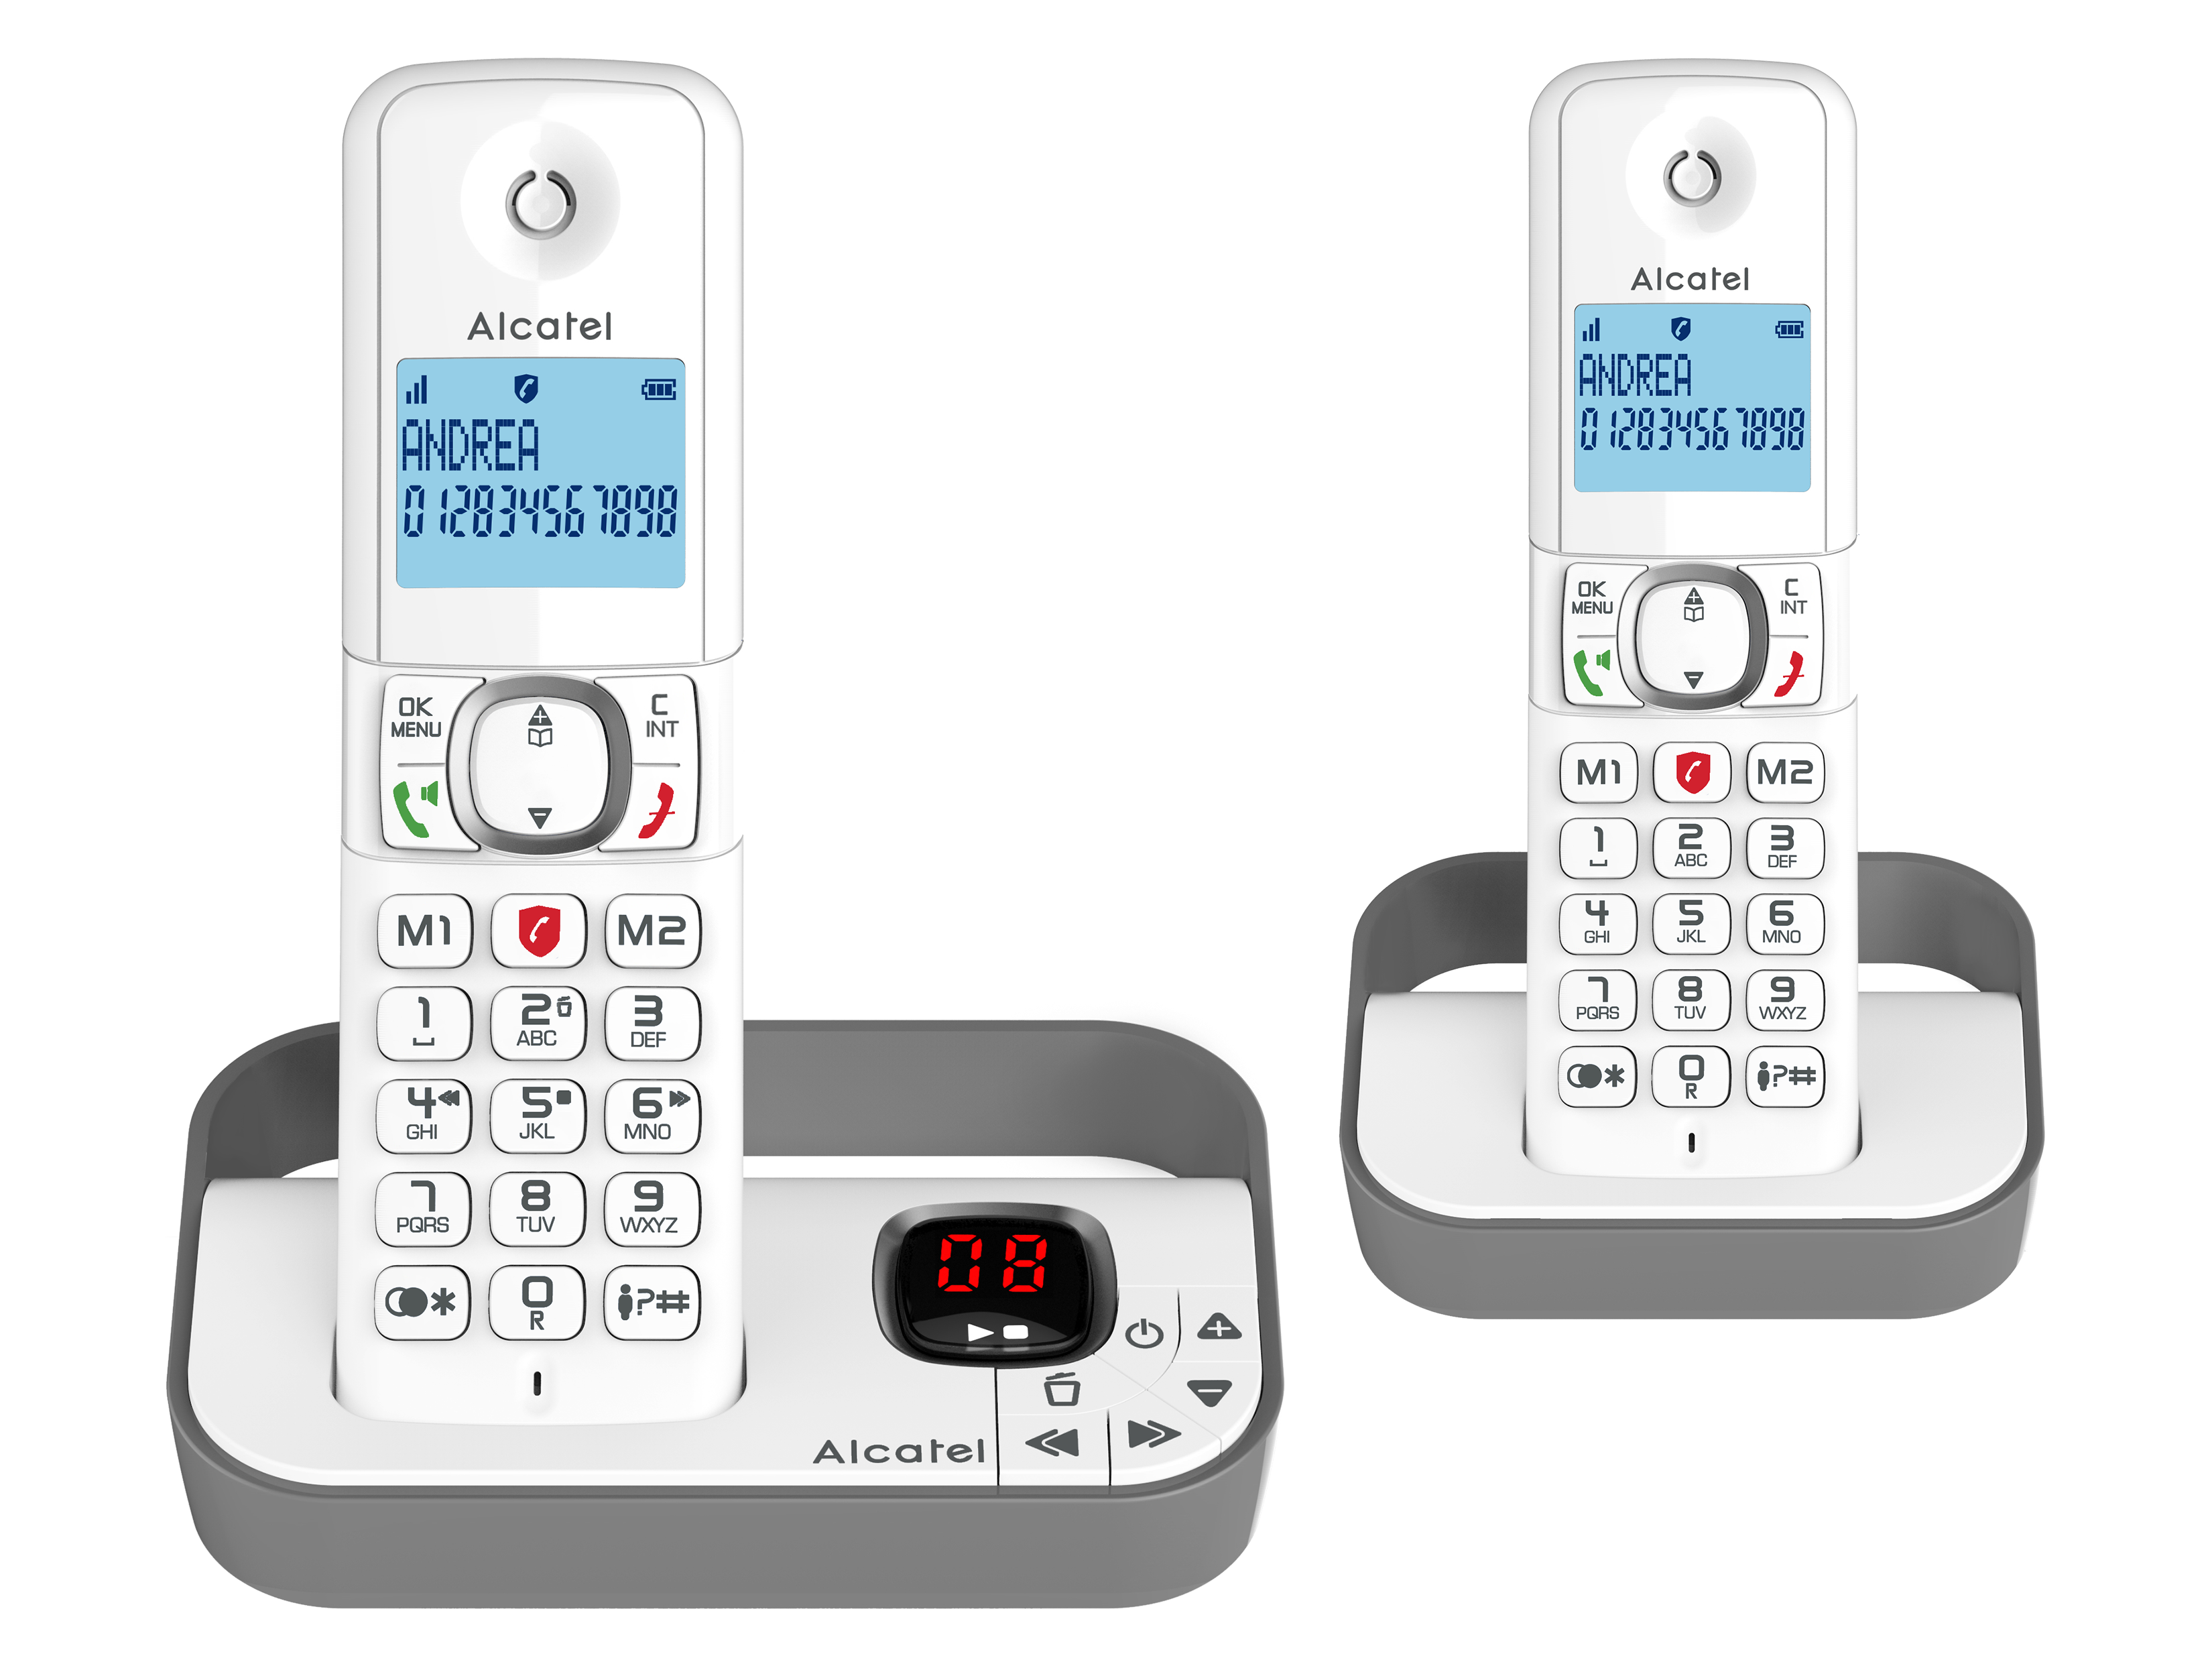 Téléphone fixe sans fil avec répondeur Duo F860 Voice - Gris